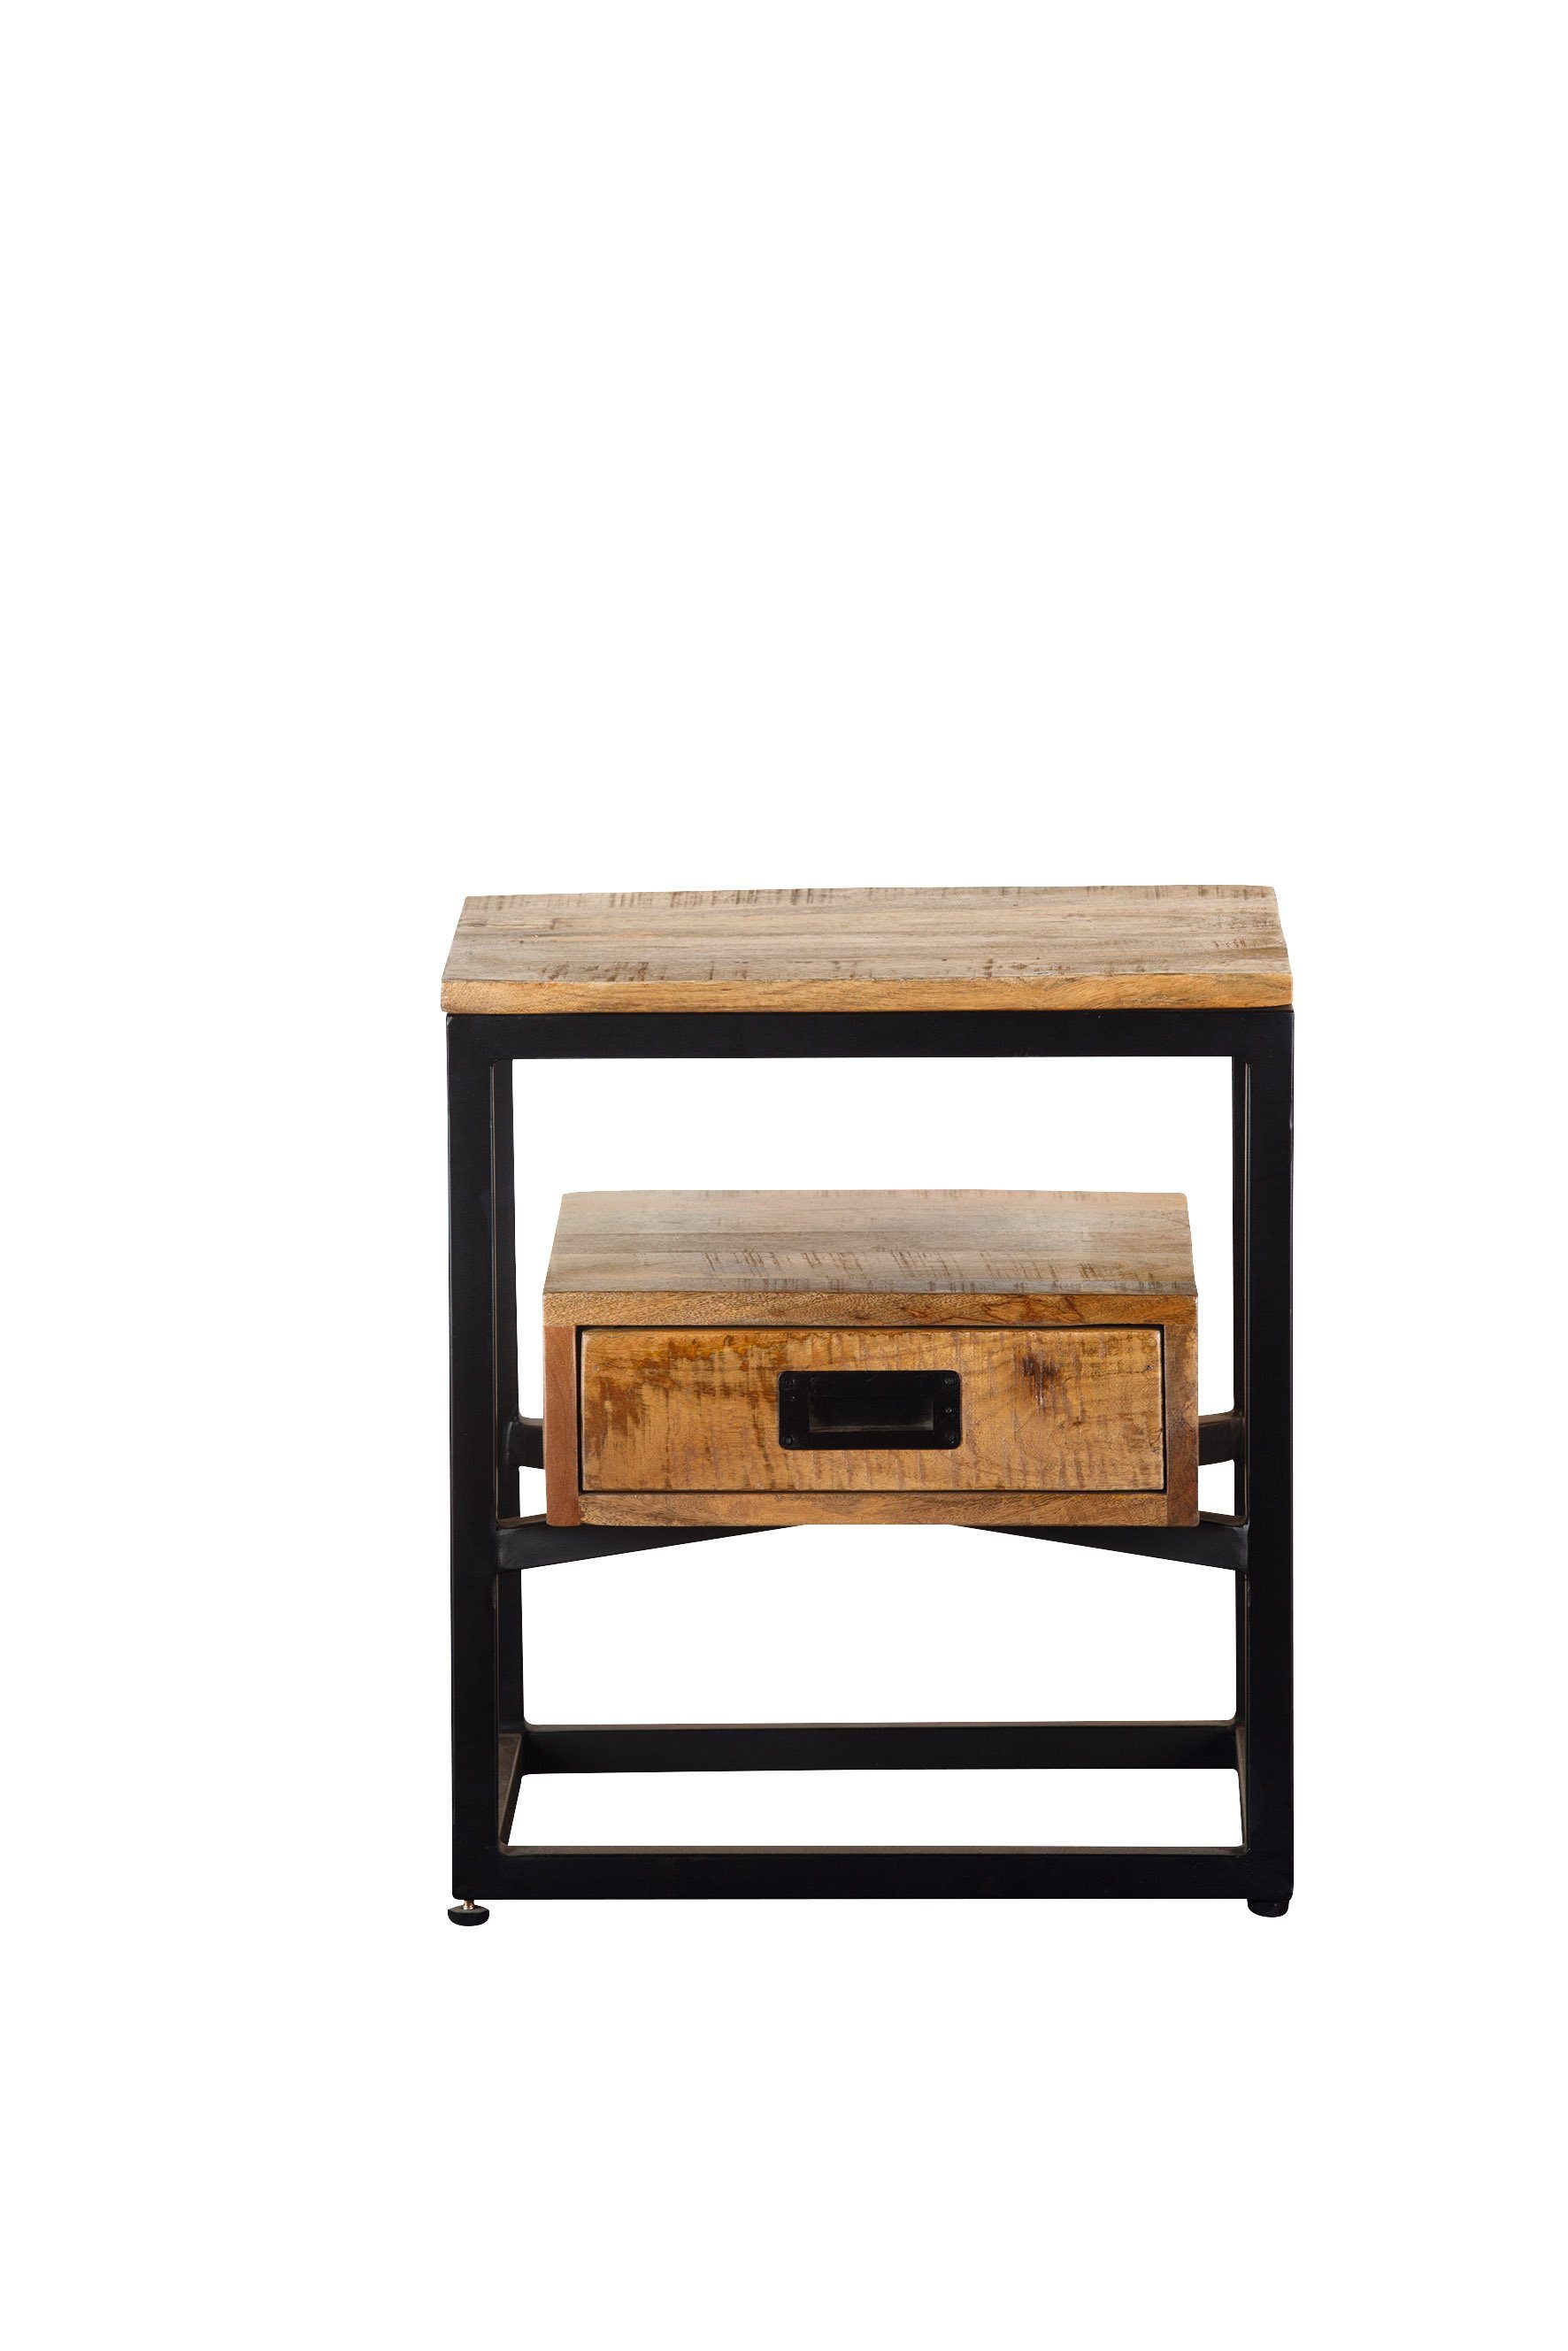 GILDE Beistelltisch GILDE Tisch Legna - naturfarben-schwarz - H. 50cm x B. 35cm